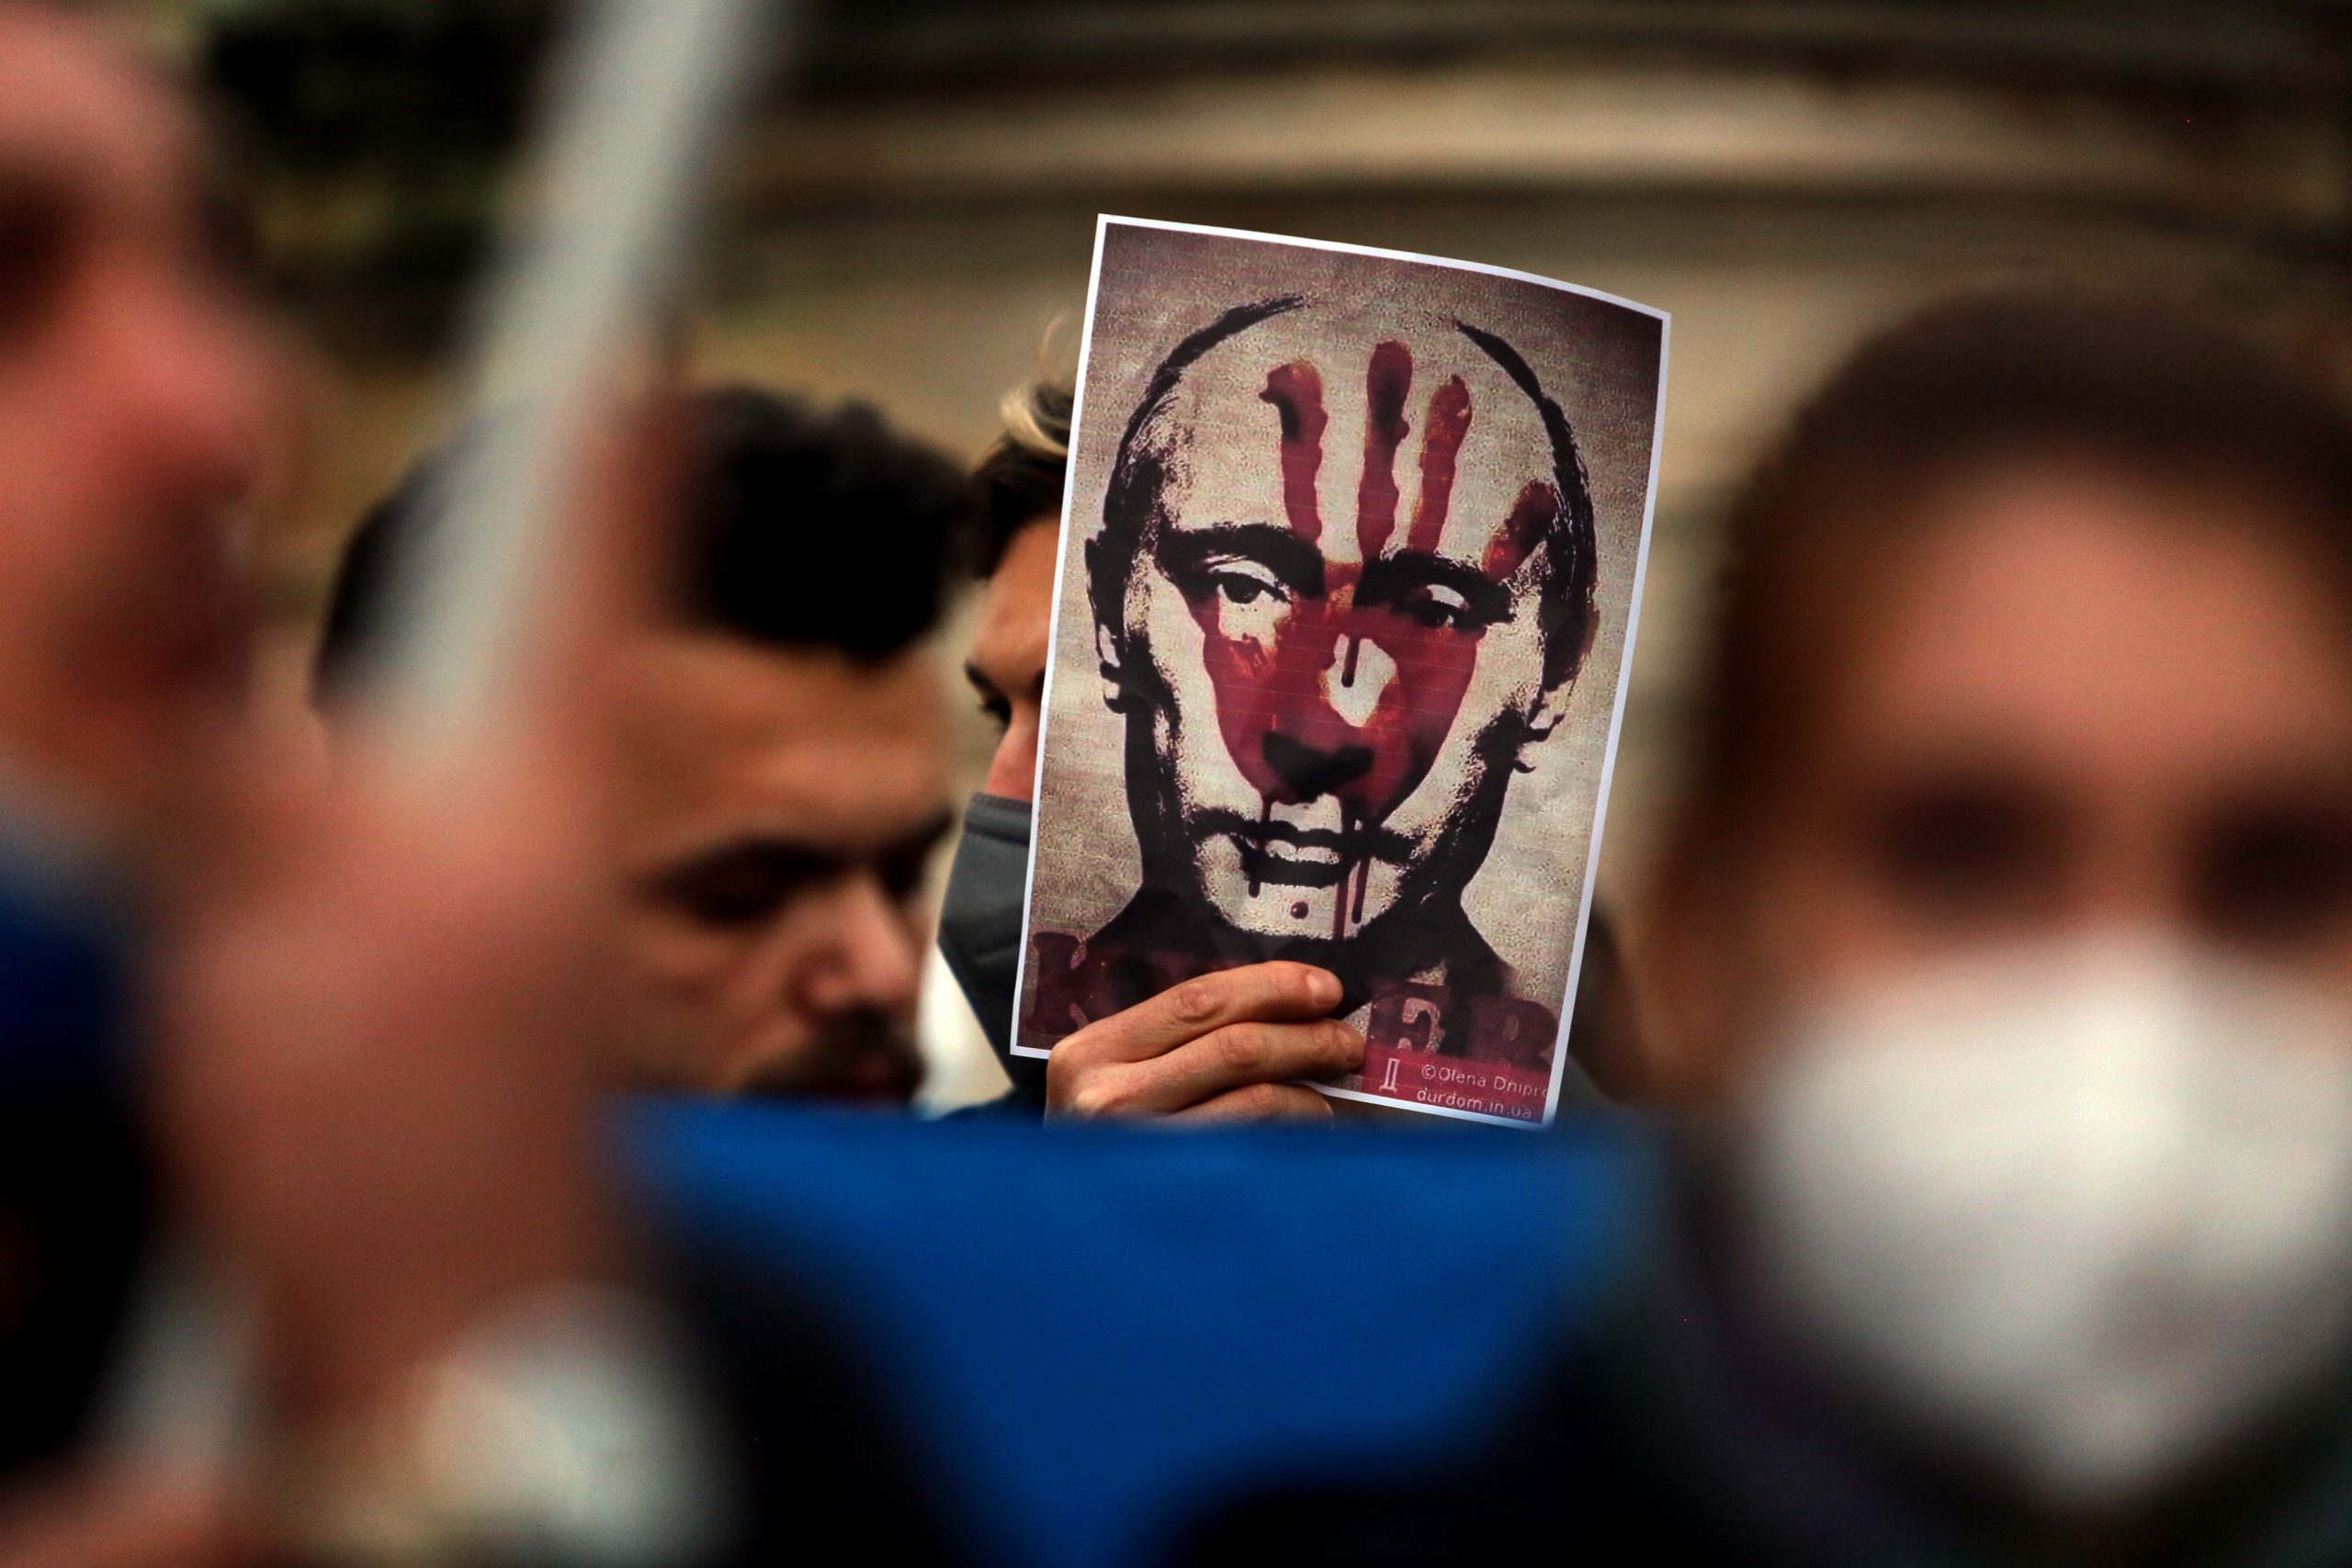 Demonstracja przeciwko reżimowi Putina, fot. Marco Iacobucci Epp, Shutterstock